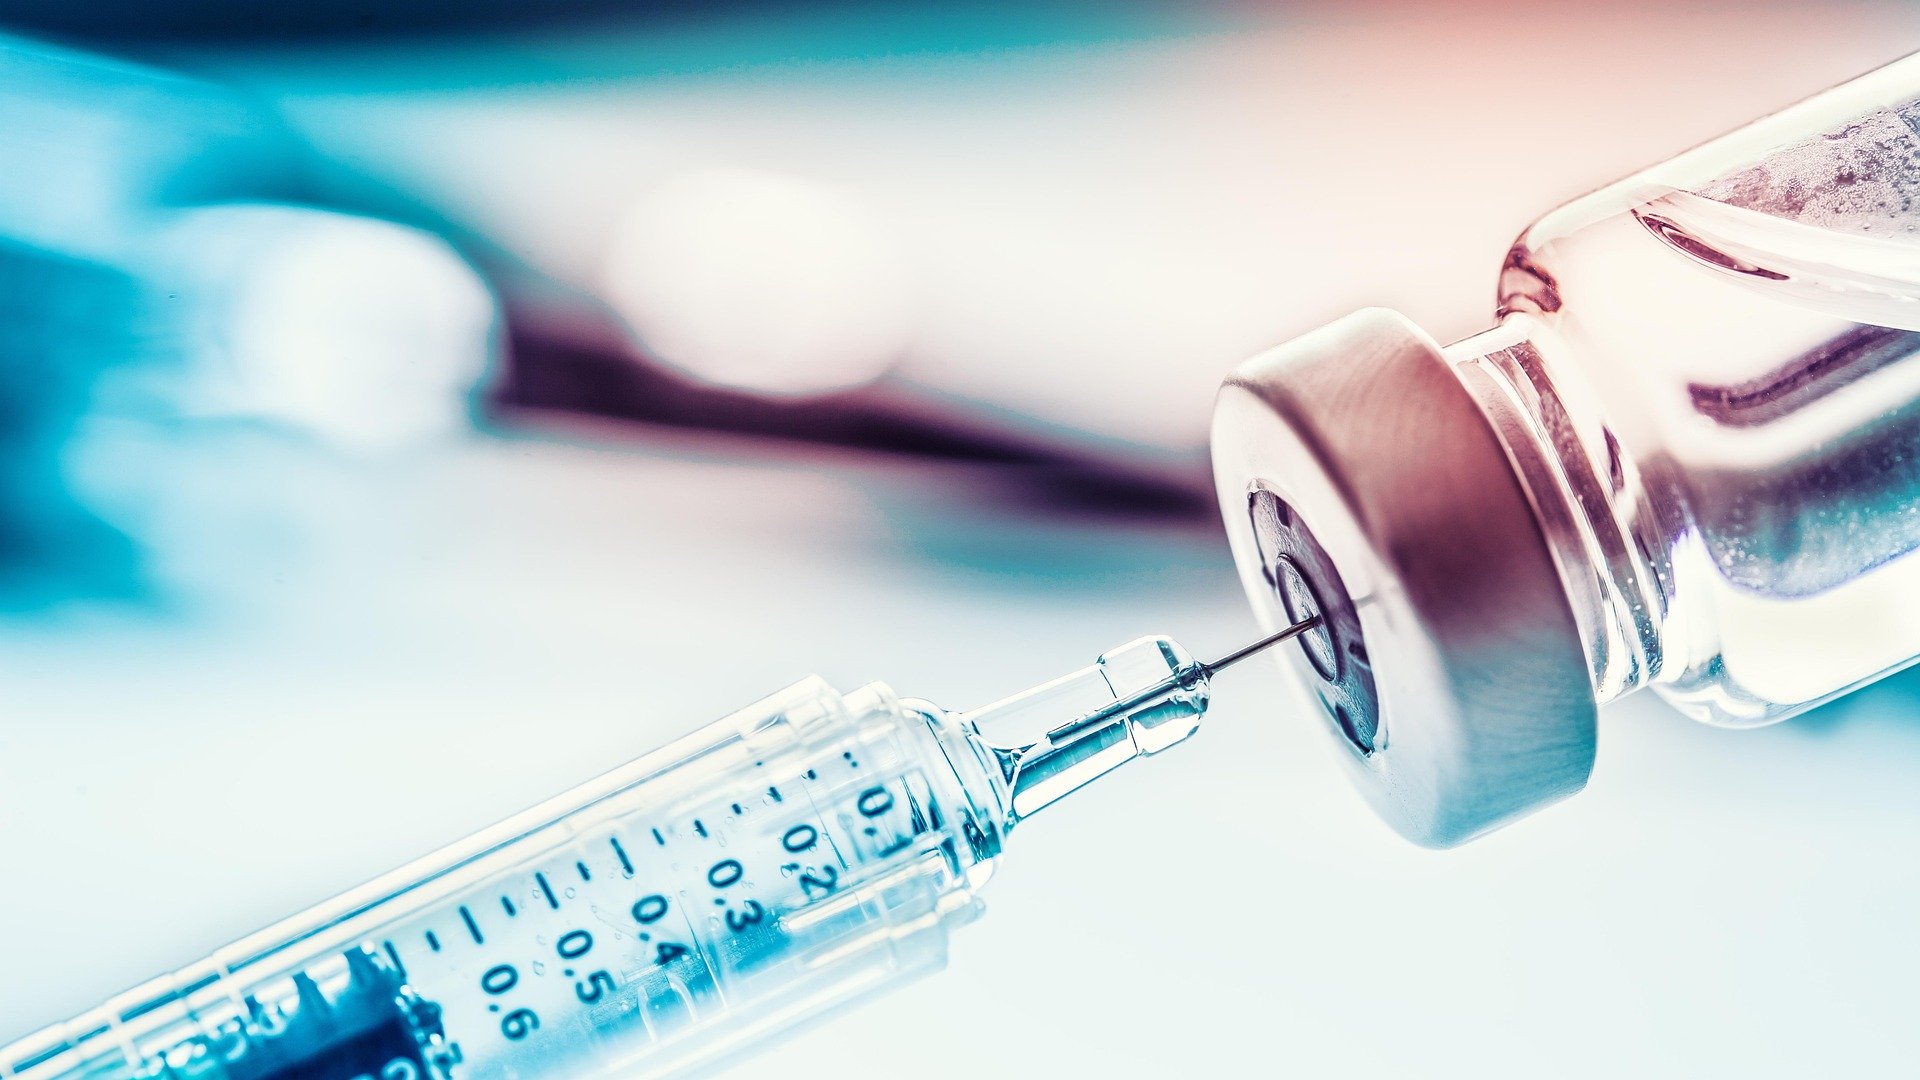 Will Australia’s lack of Vaccine Compensation Scheme slow the uptake of a COVID-19 Vaccine?